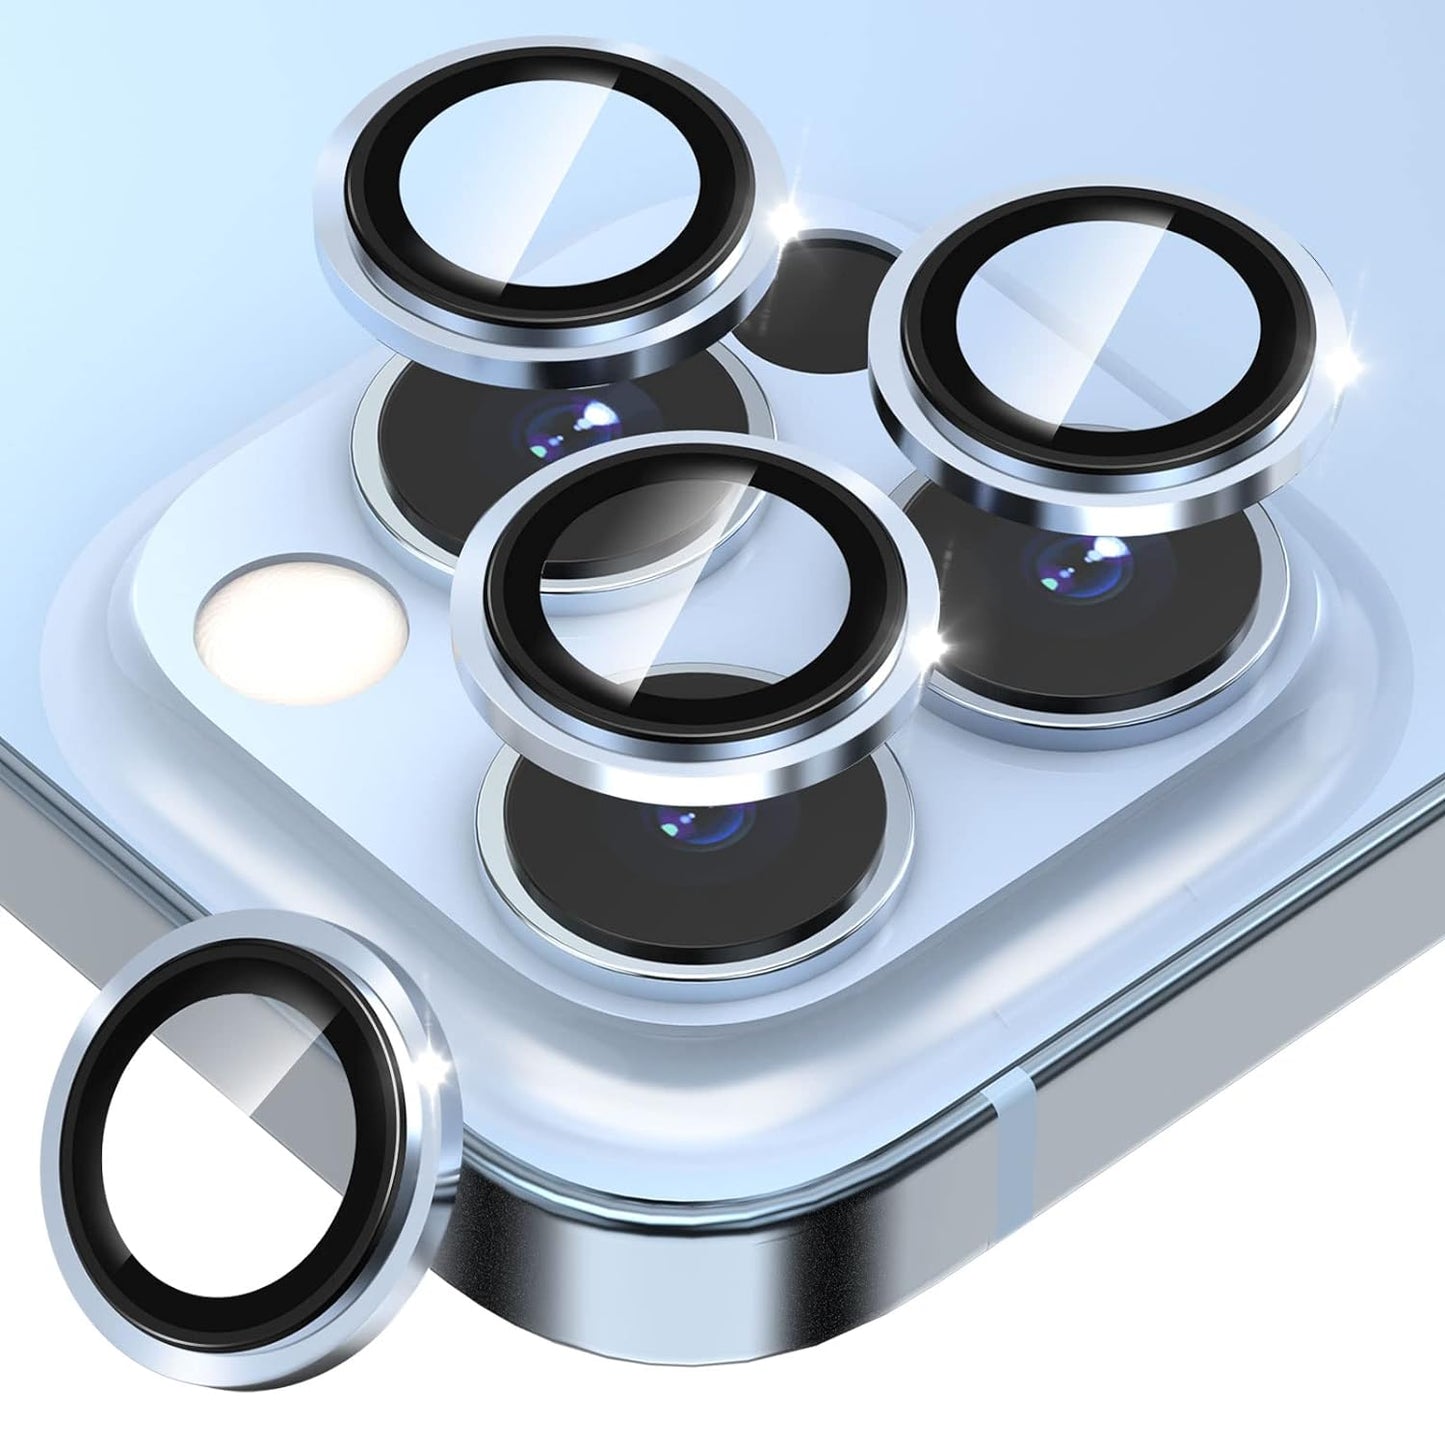 Aluminium Alloy Easy to Install Camera Rings - iPhone